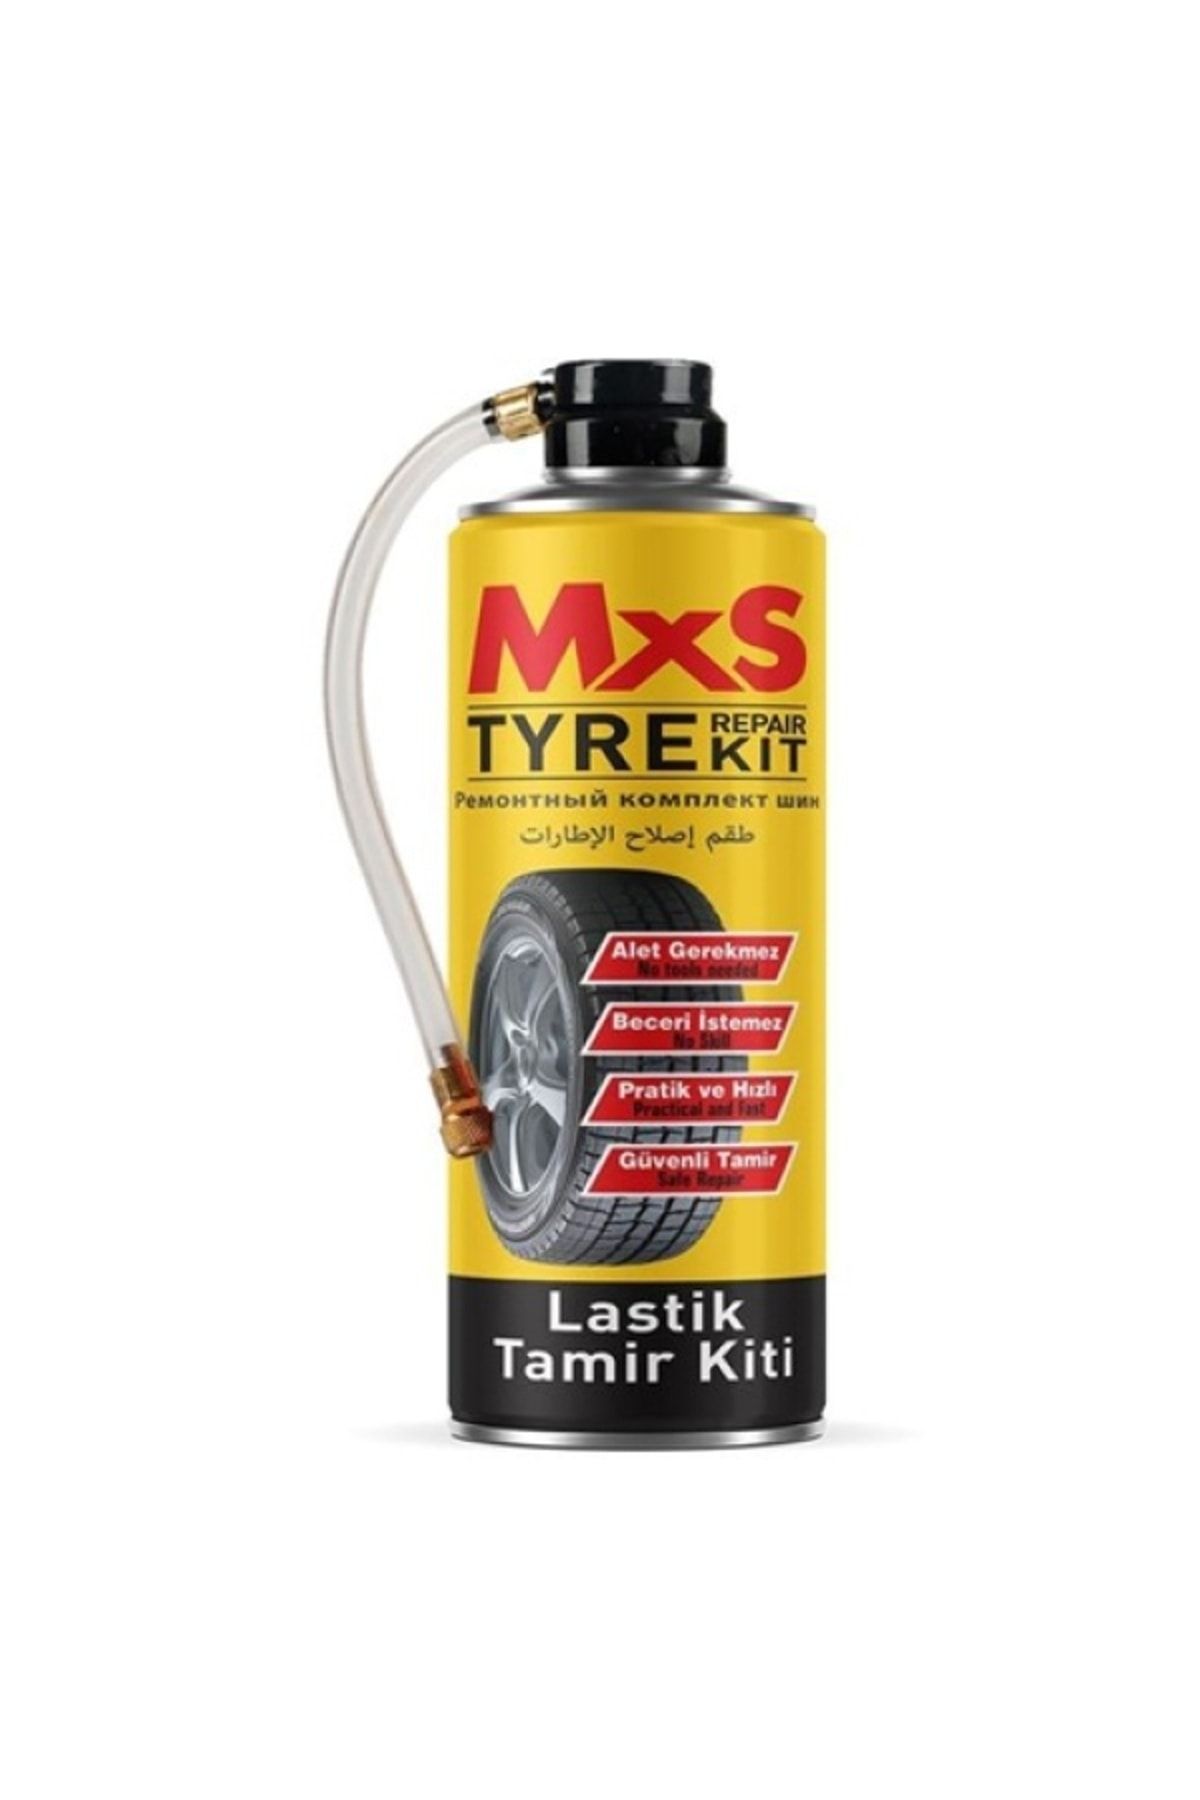 MxS LASTIK TAMIR KITI SISIRIR-ONARIR-TPMS SENSOR SAFE 400ML. - MXS 22020